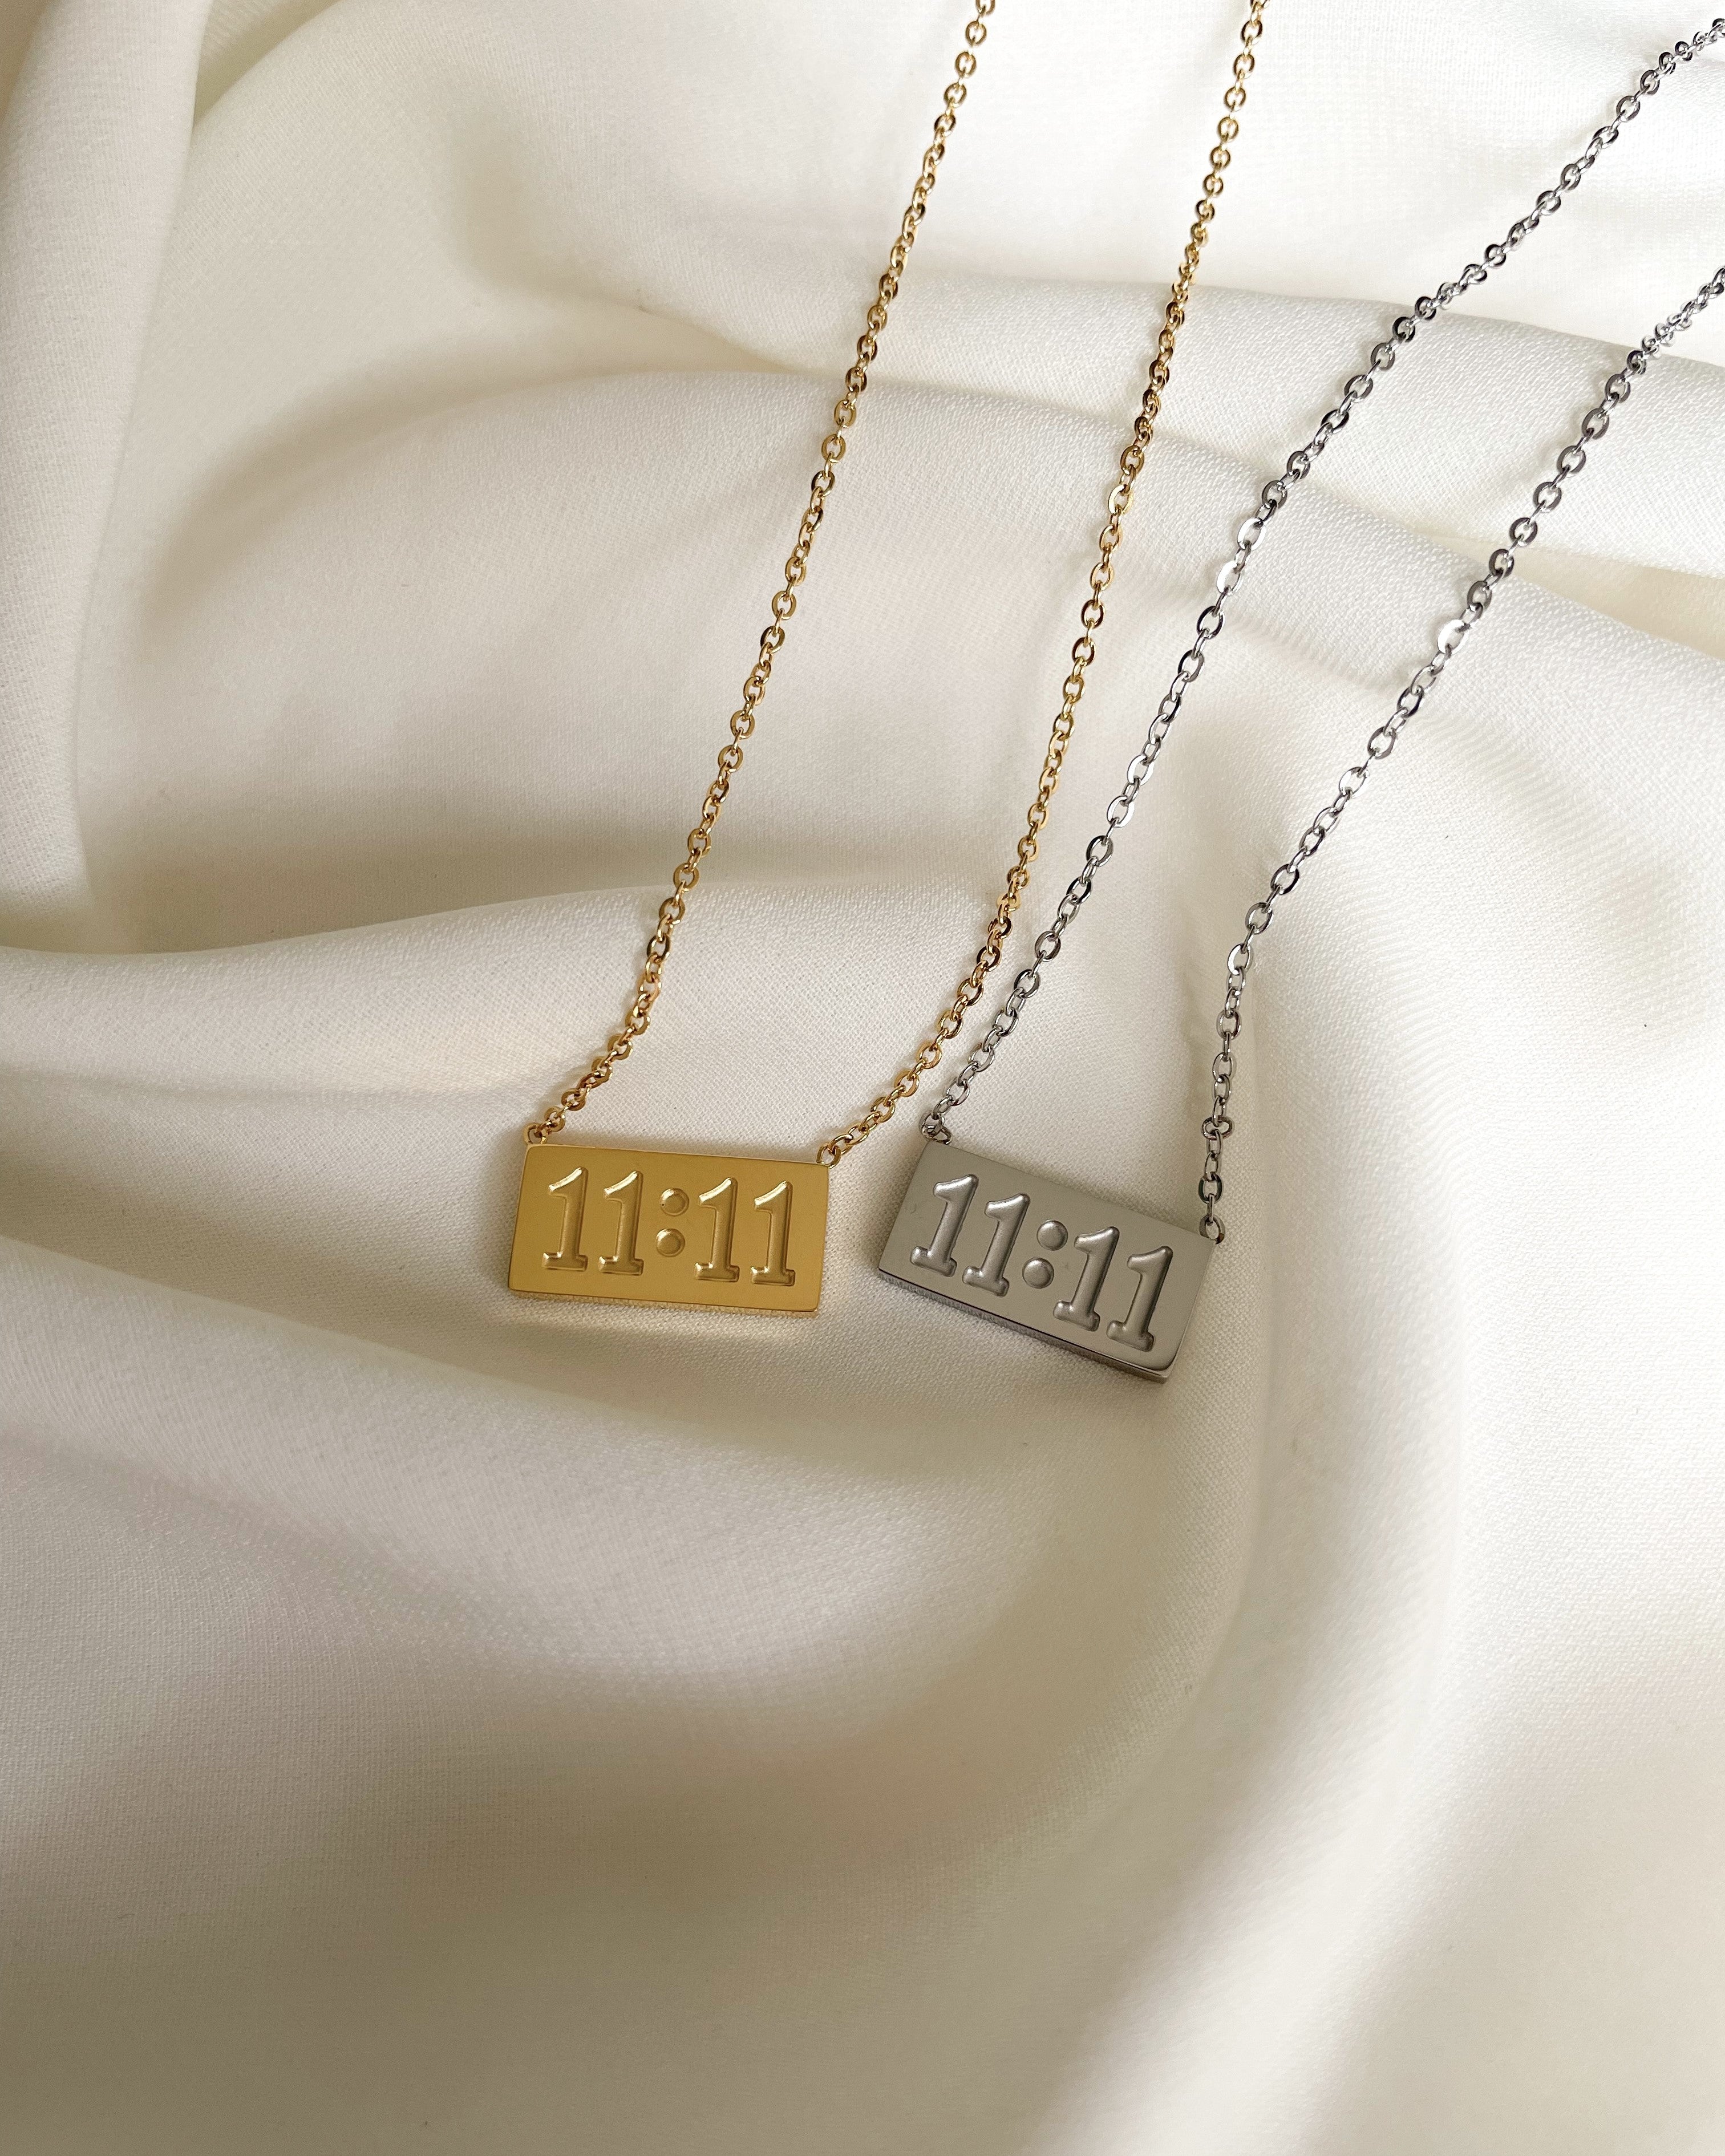 The 11:11 Choker Necklace | Gold choker necklace, Gold chain necklace, Gold  necklace